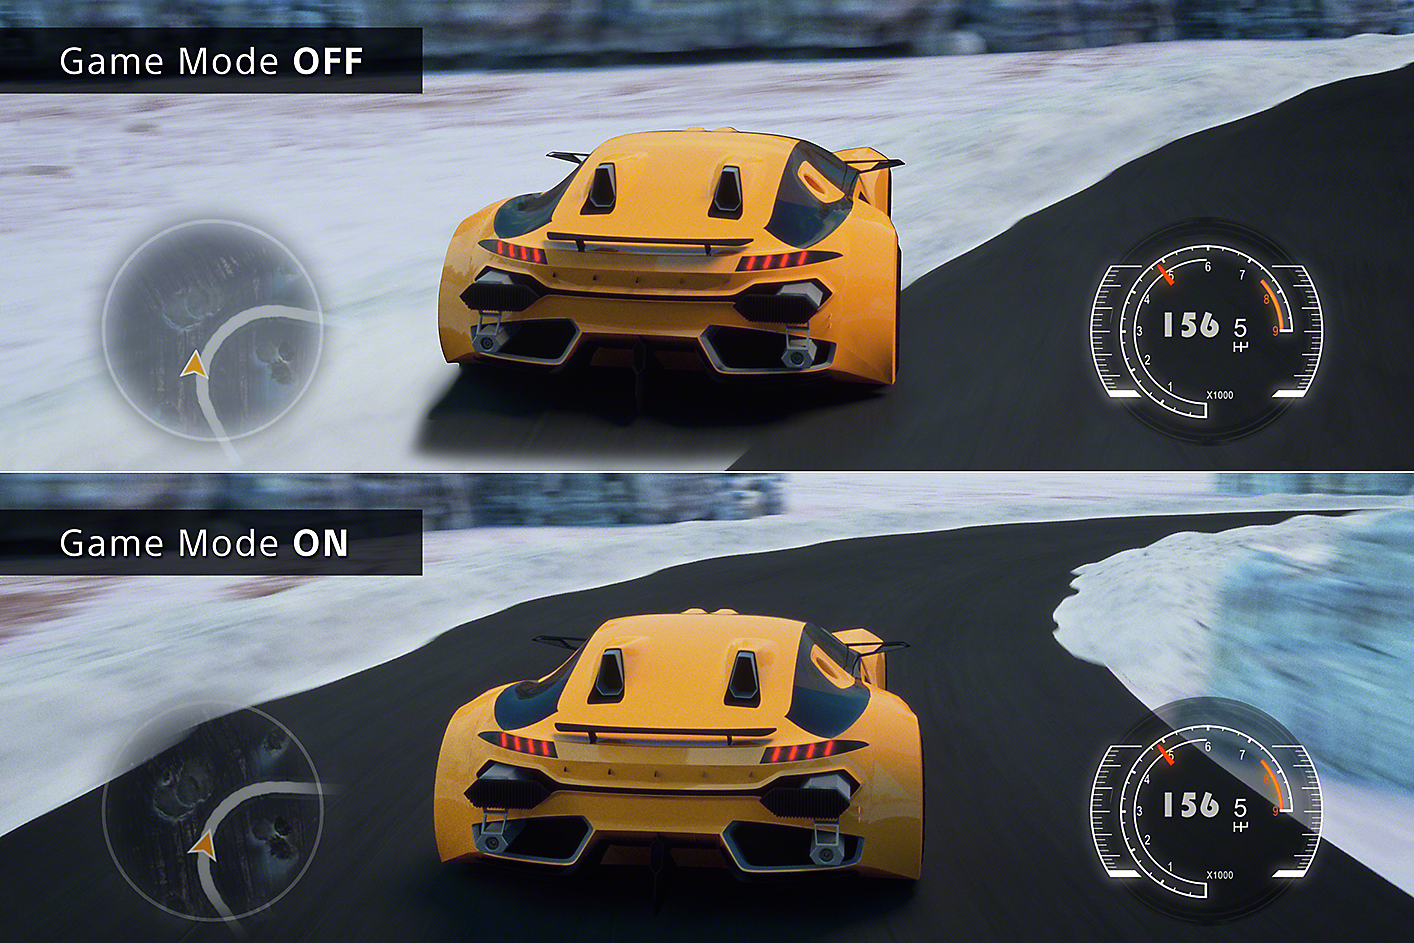 顯示兩款賽車遊戲場景的分割影像，一邊顯示遊戲模式關閉下駛離賽道的車，另一邊則顯示遊戲模式開啟下在賽道上行駛的車